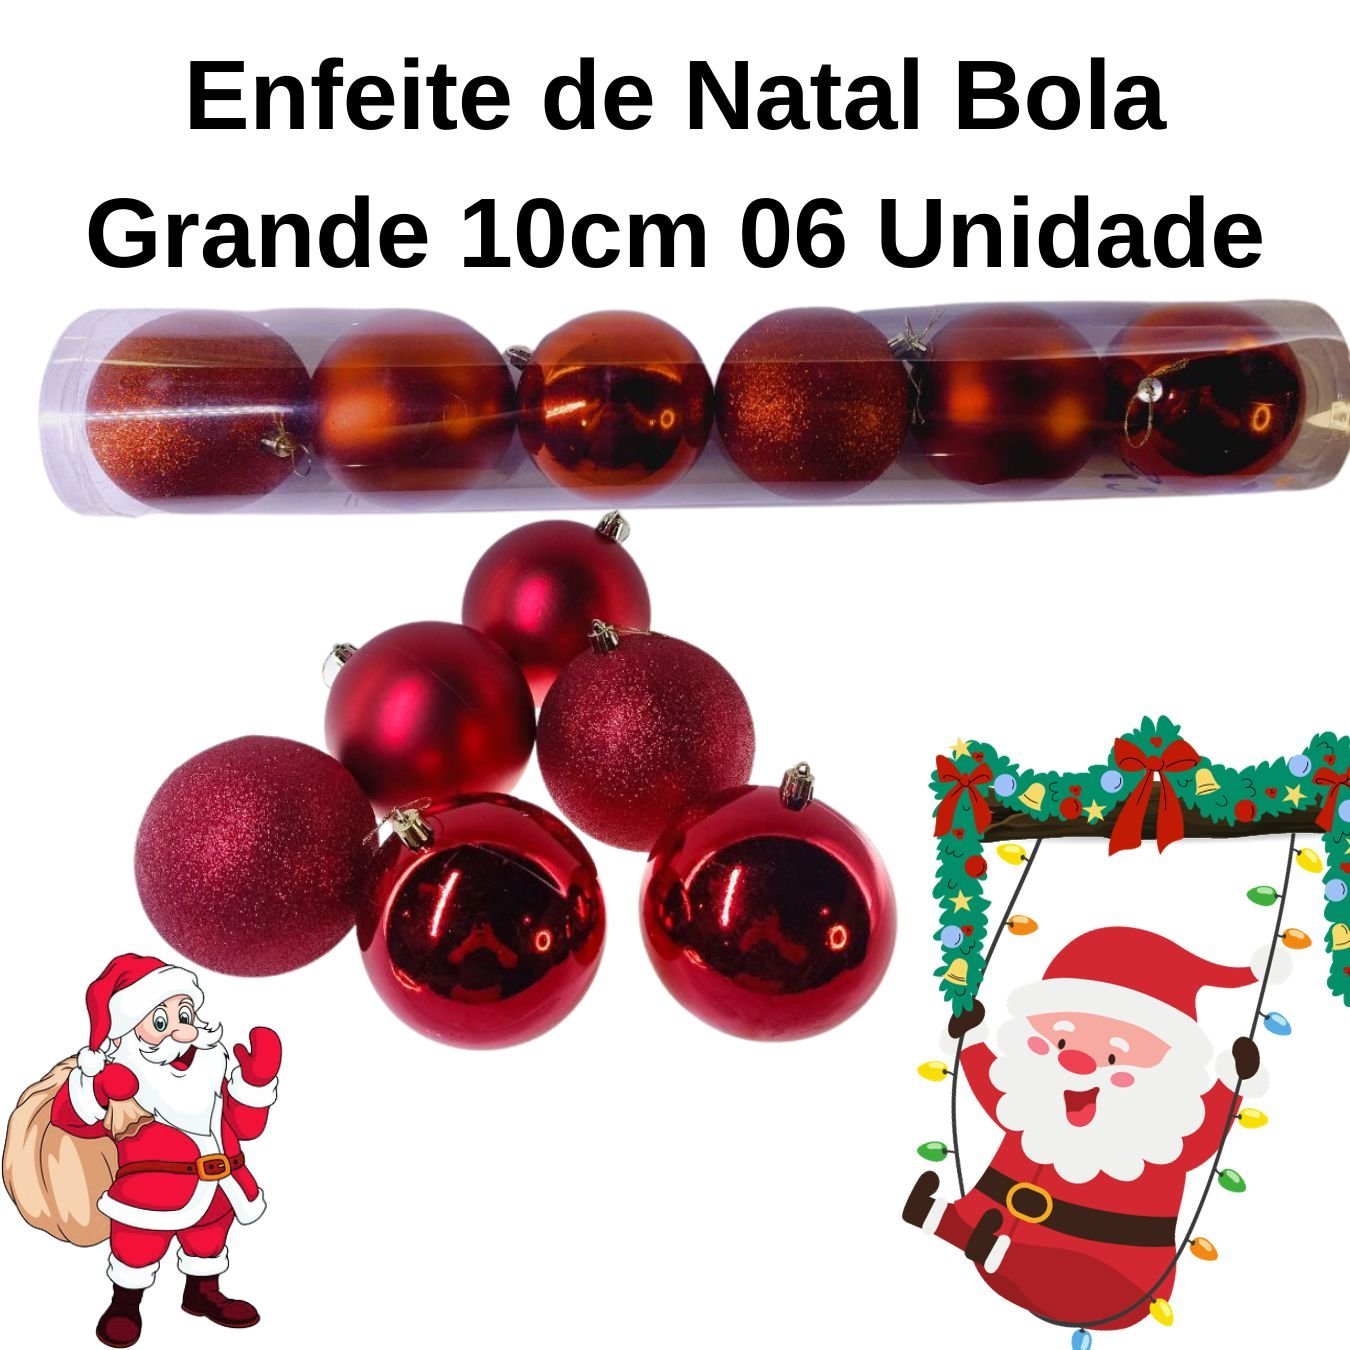 Enfeite de Natal Bola Grande 10cm 06 Unidade Cor:Vermelho - 3